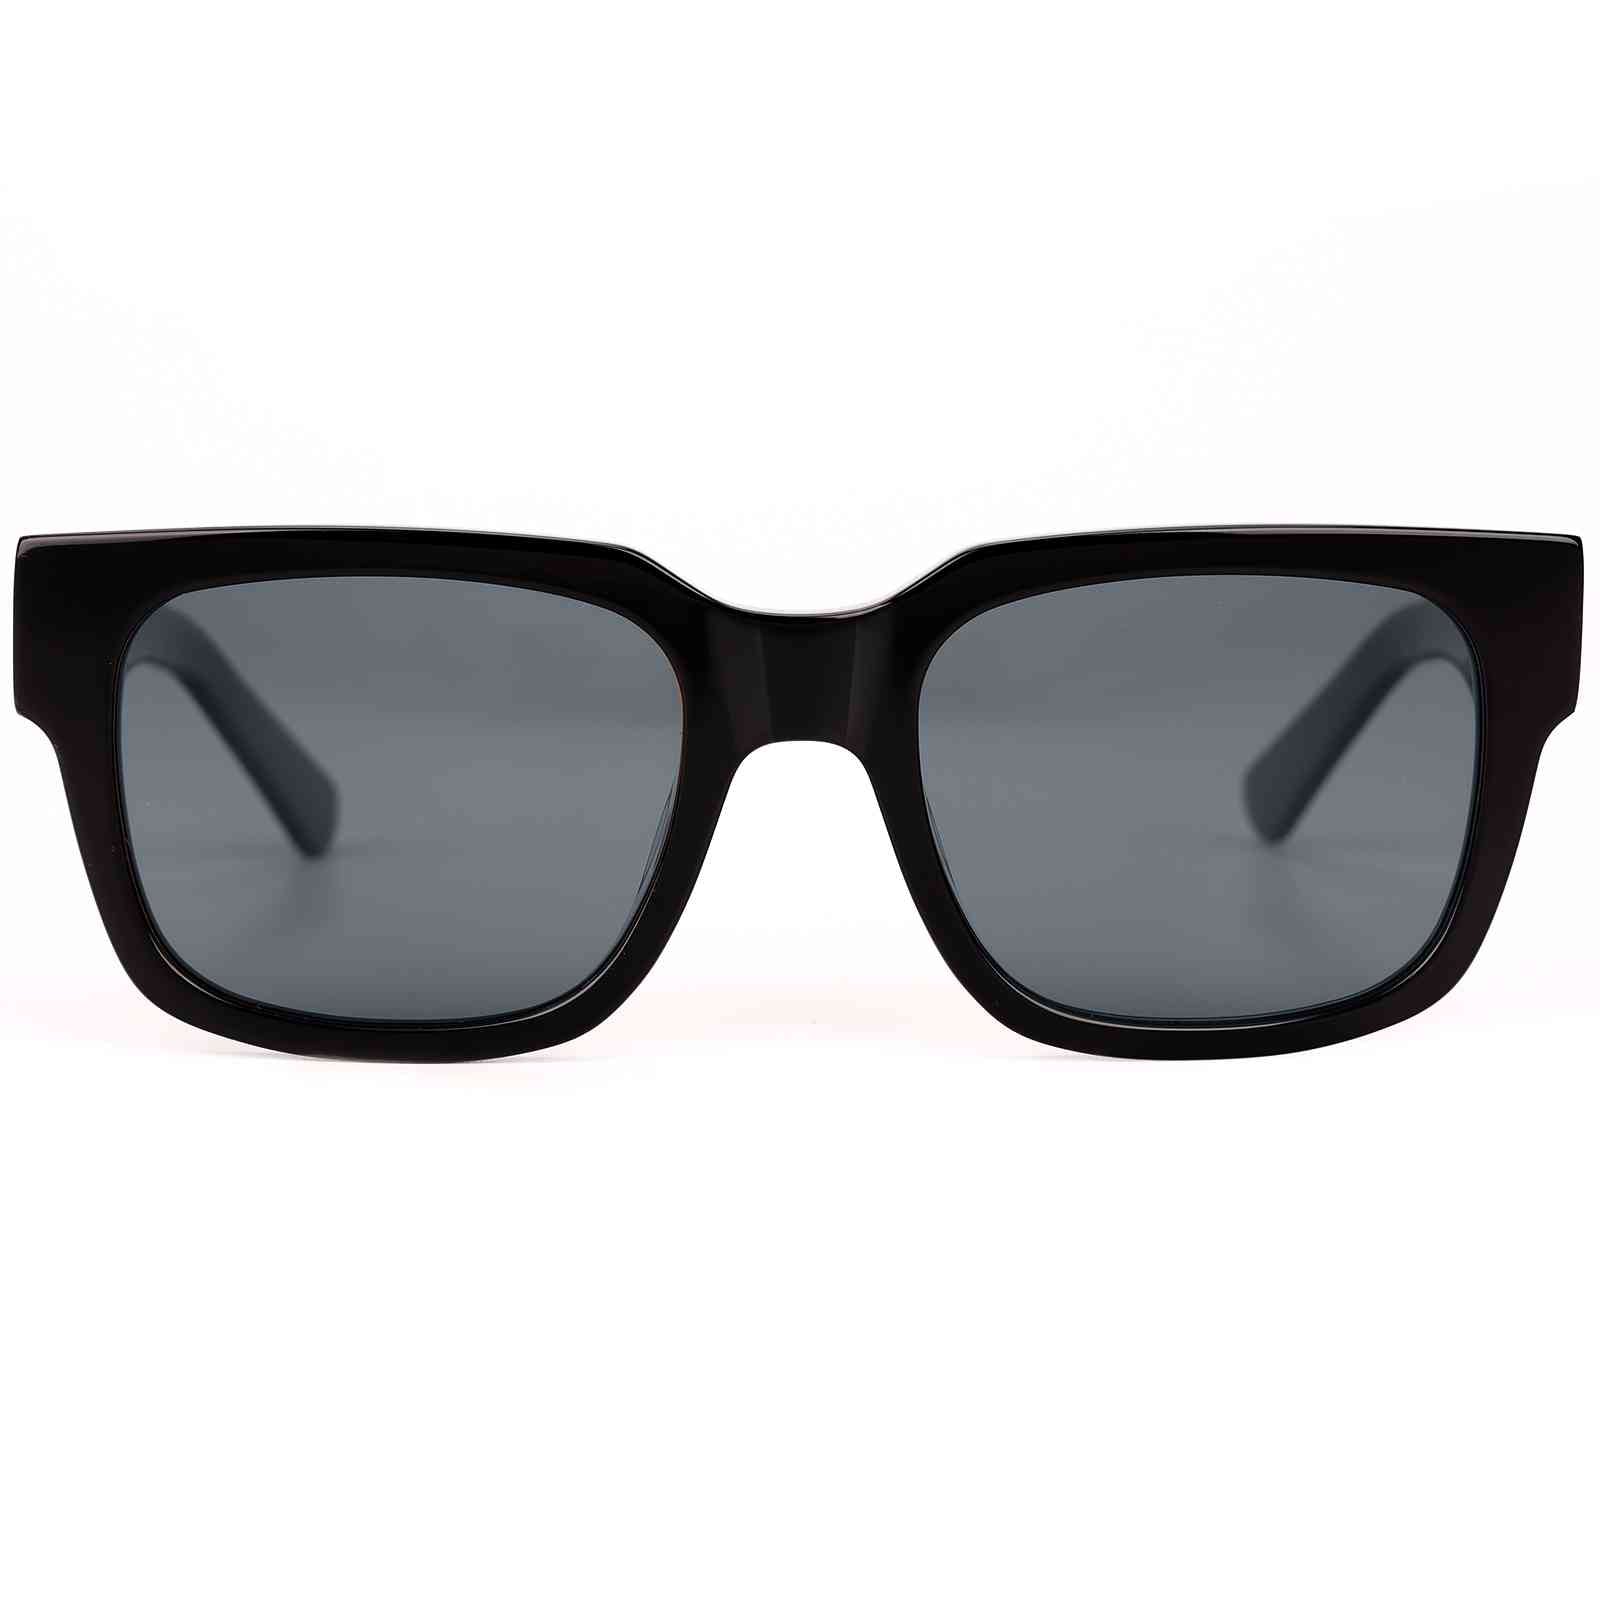 Raven Polarized Sport Sunglasses, Black Frame +Grey Lens